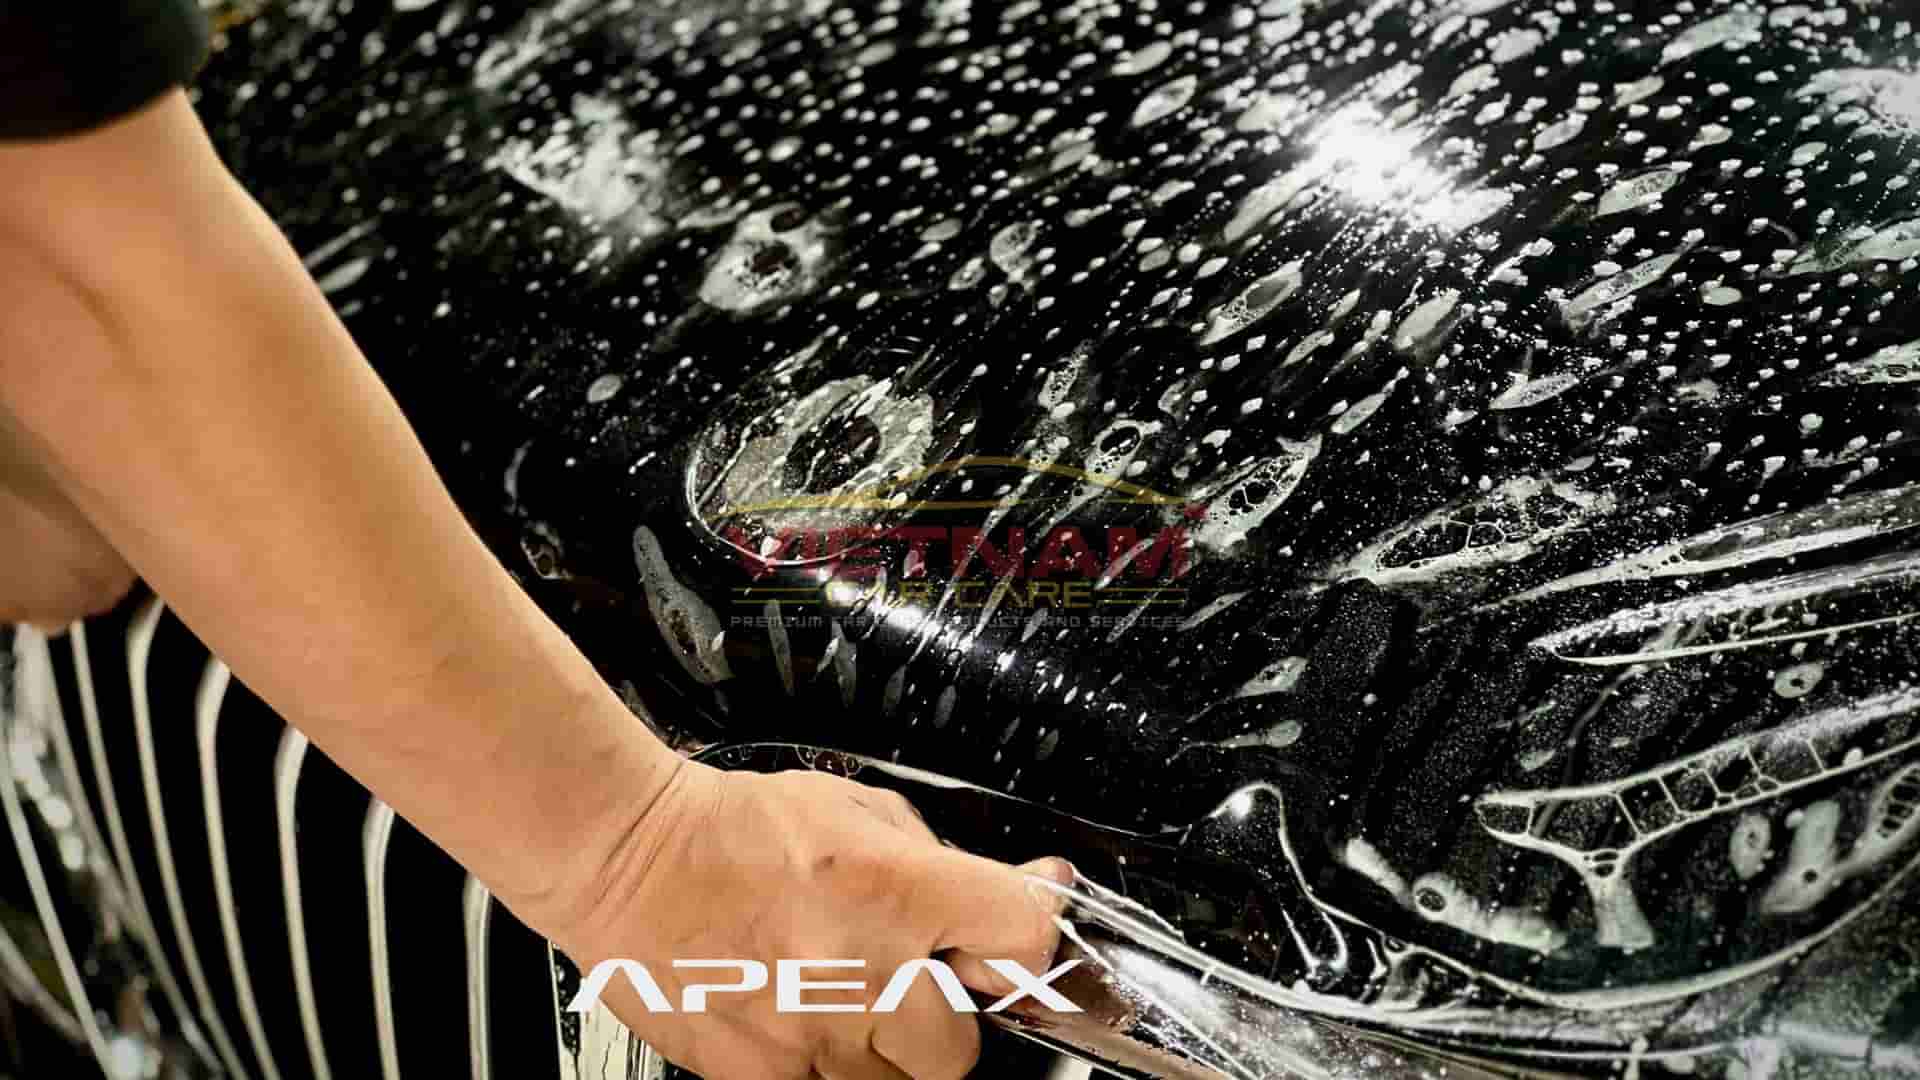 Dán PPF APEAX (nhập khẩu Mỹ) là khoản đầu tư đáng tiền nhất hiện nay cho xe hơi., chóng trầy xước, chống bám bẩn ưu việt!